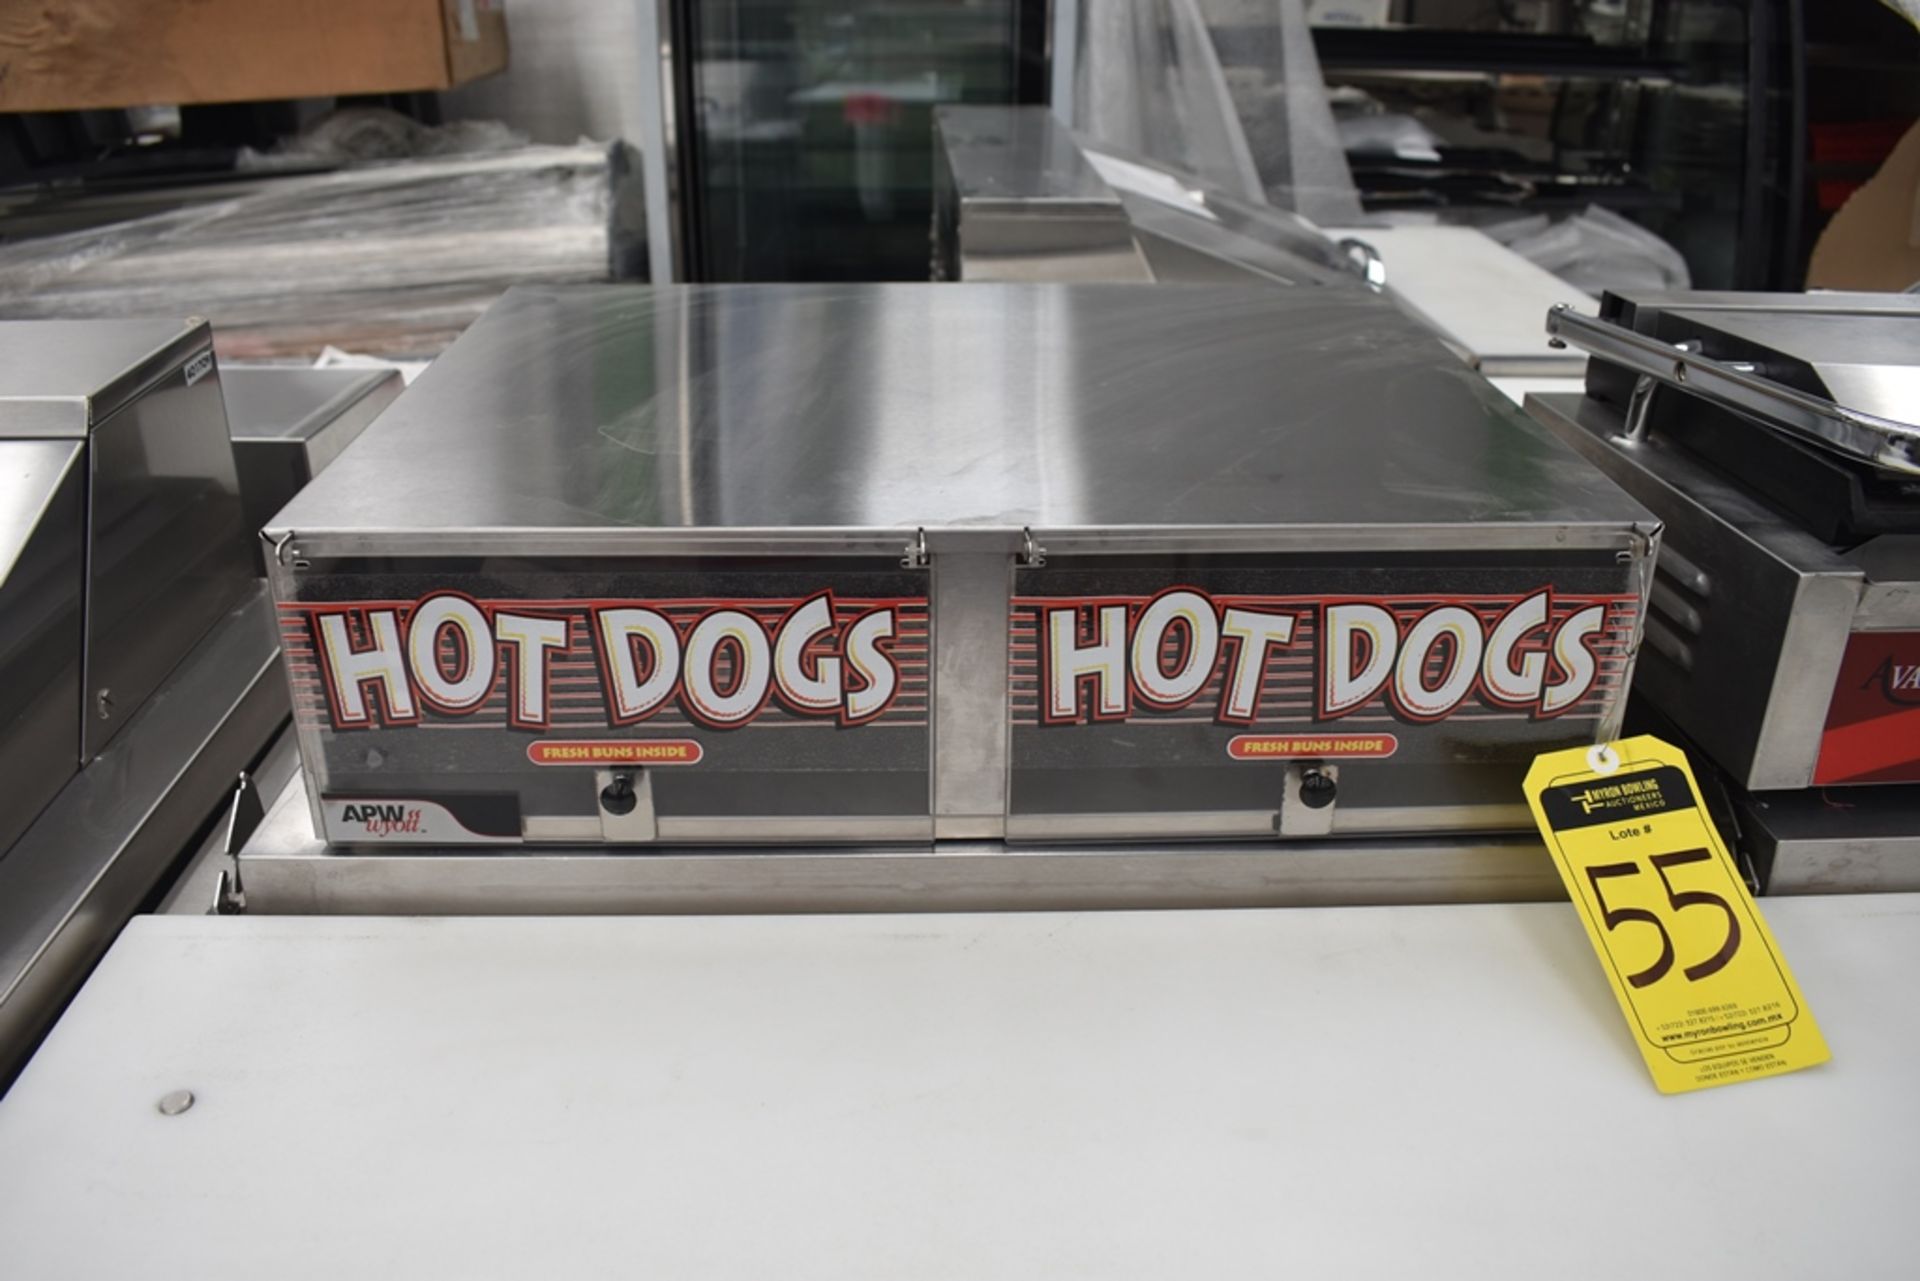 NUEVOS Roller Para Salchicha De Hot Dog eléctrico (Hot Dog Grill) Marca Kreppsland, Modelo Cz-9,110v - Image 7 of 27